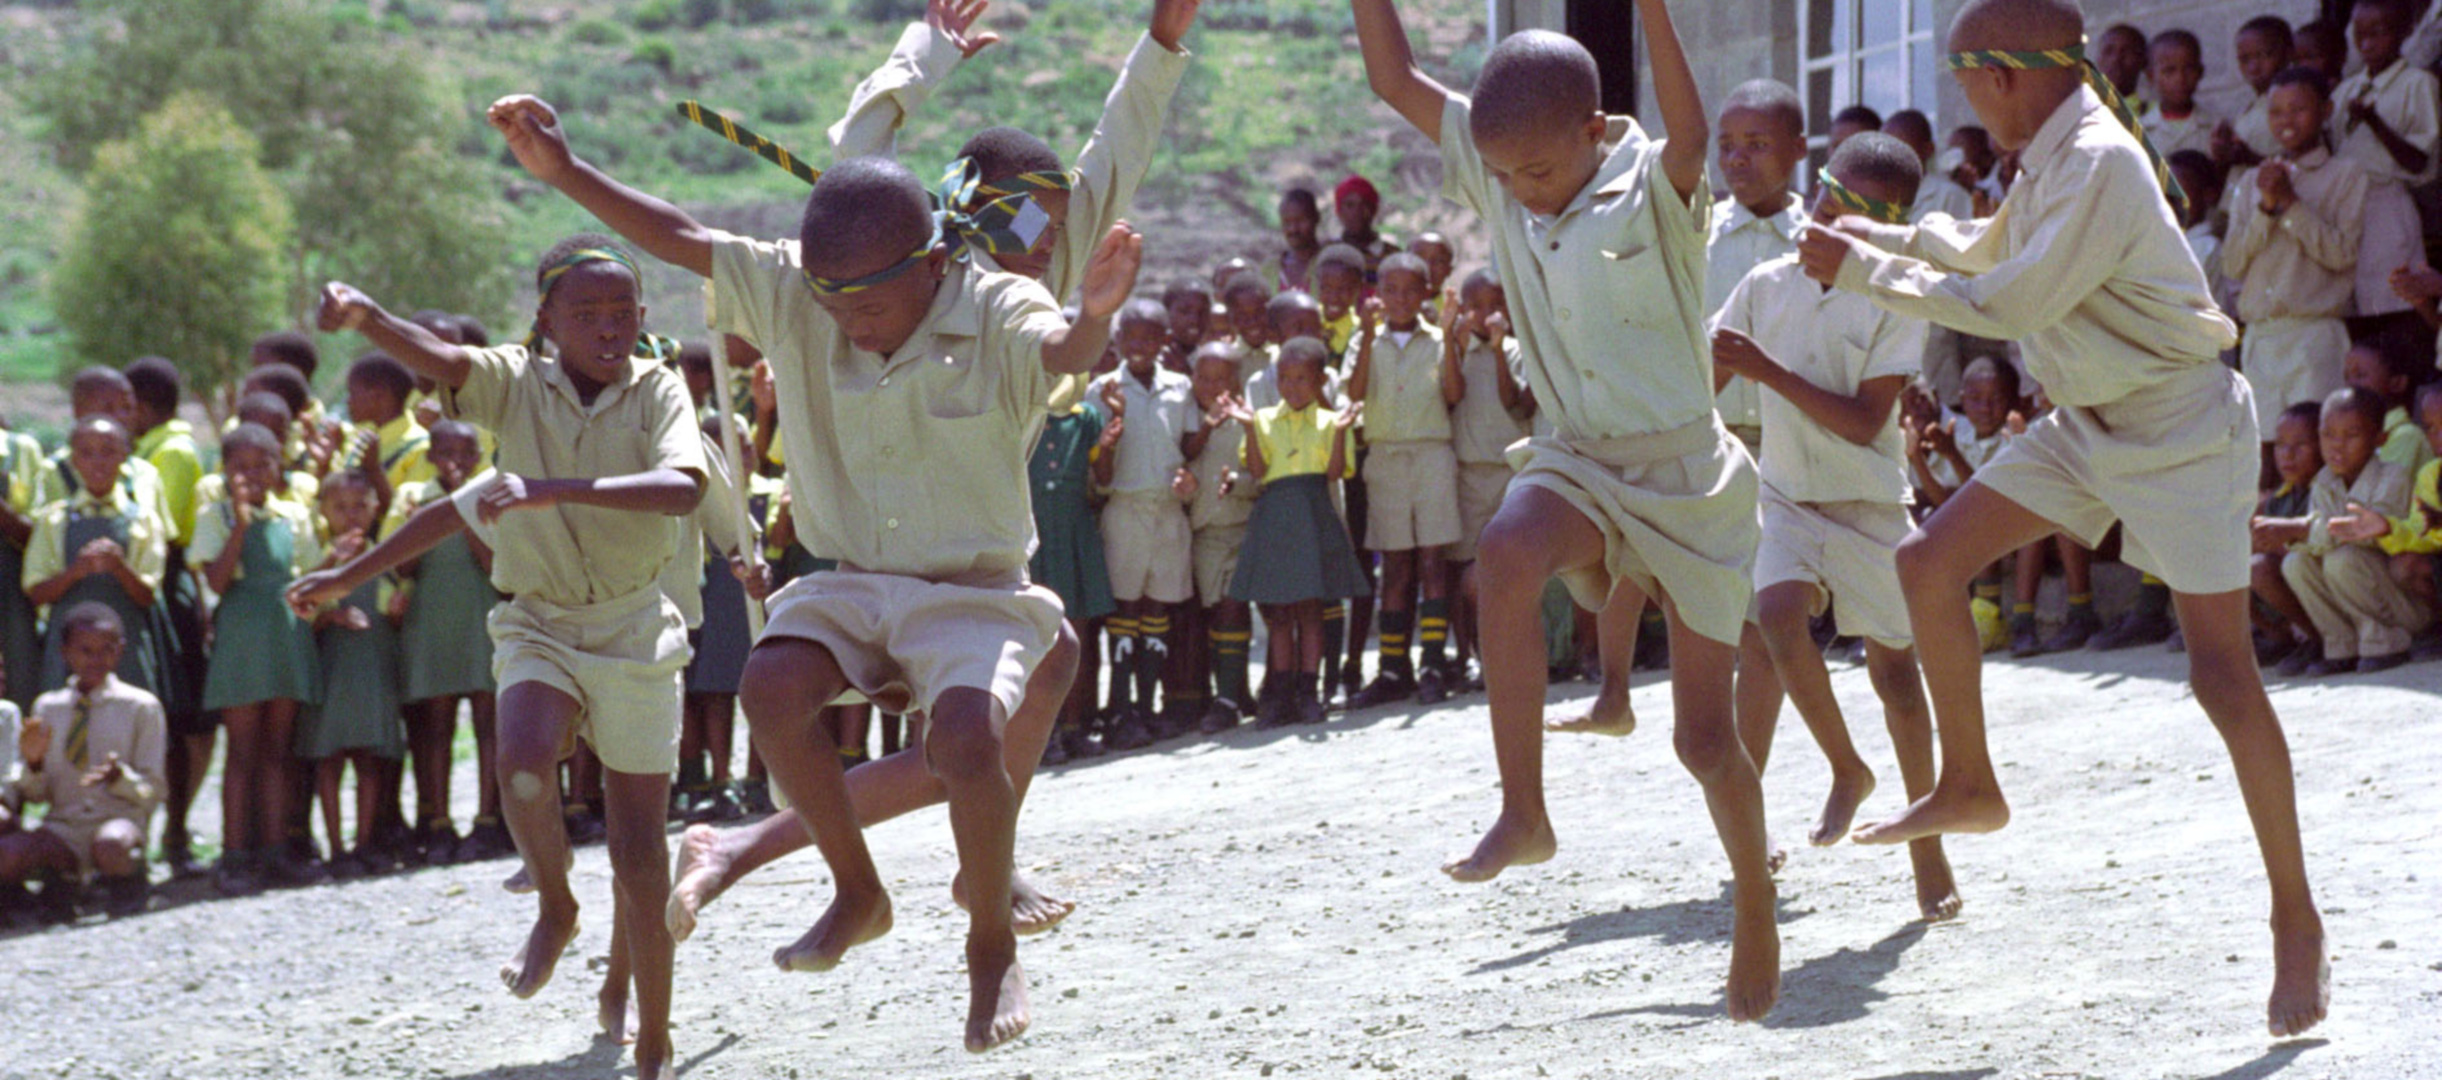 Tanzende Kinder in Eswatini